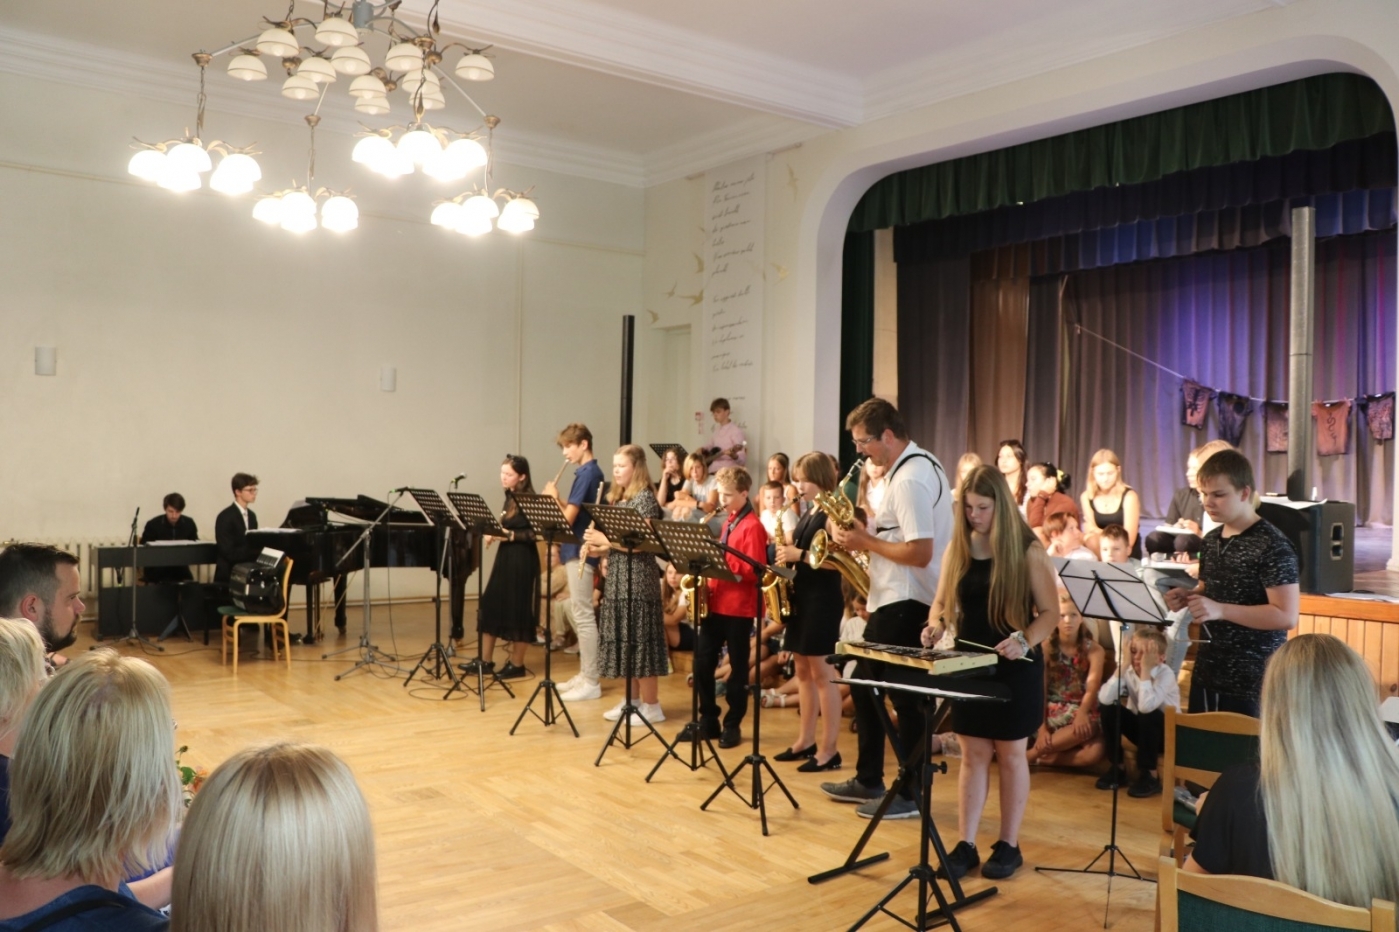 Noslēgusies Jelgavas novada Mūzikas un mākslas skolas vasaras nometne "Izkrāso pasauli 2022"